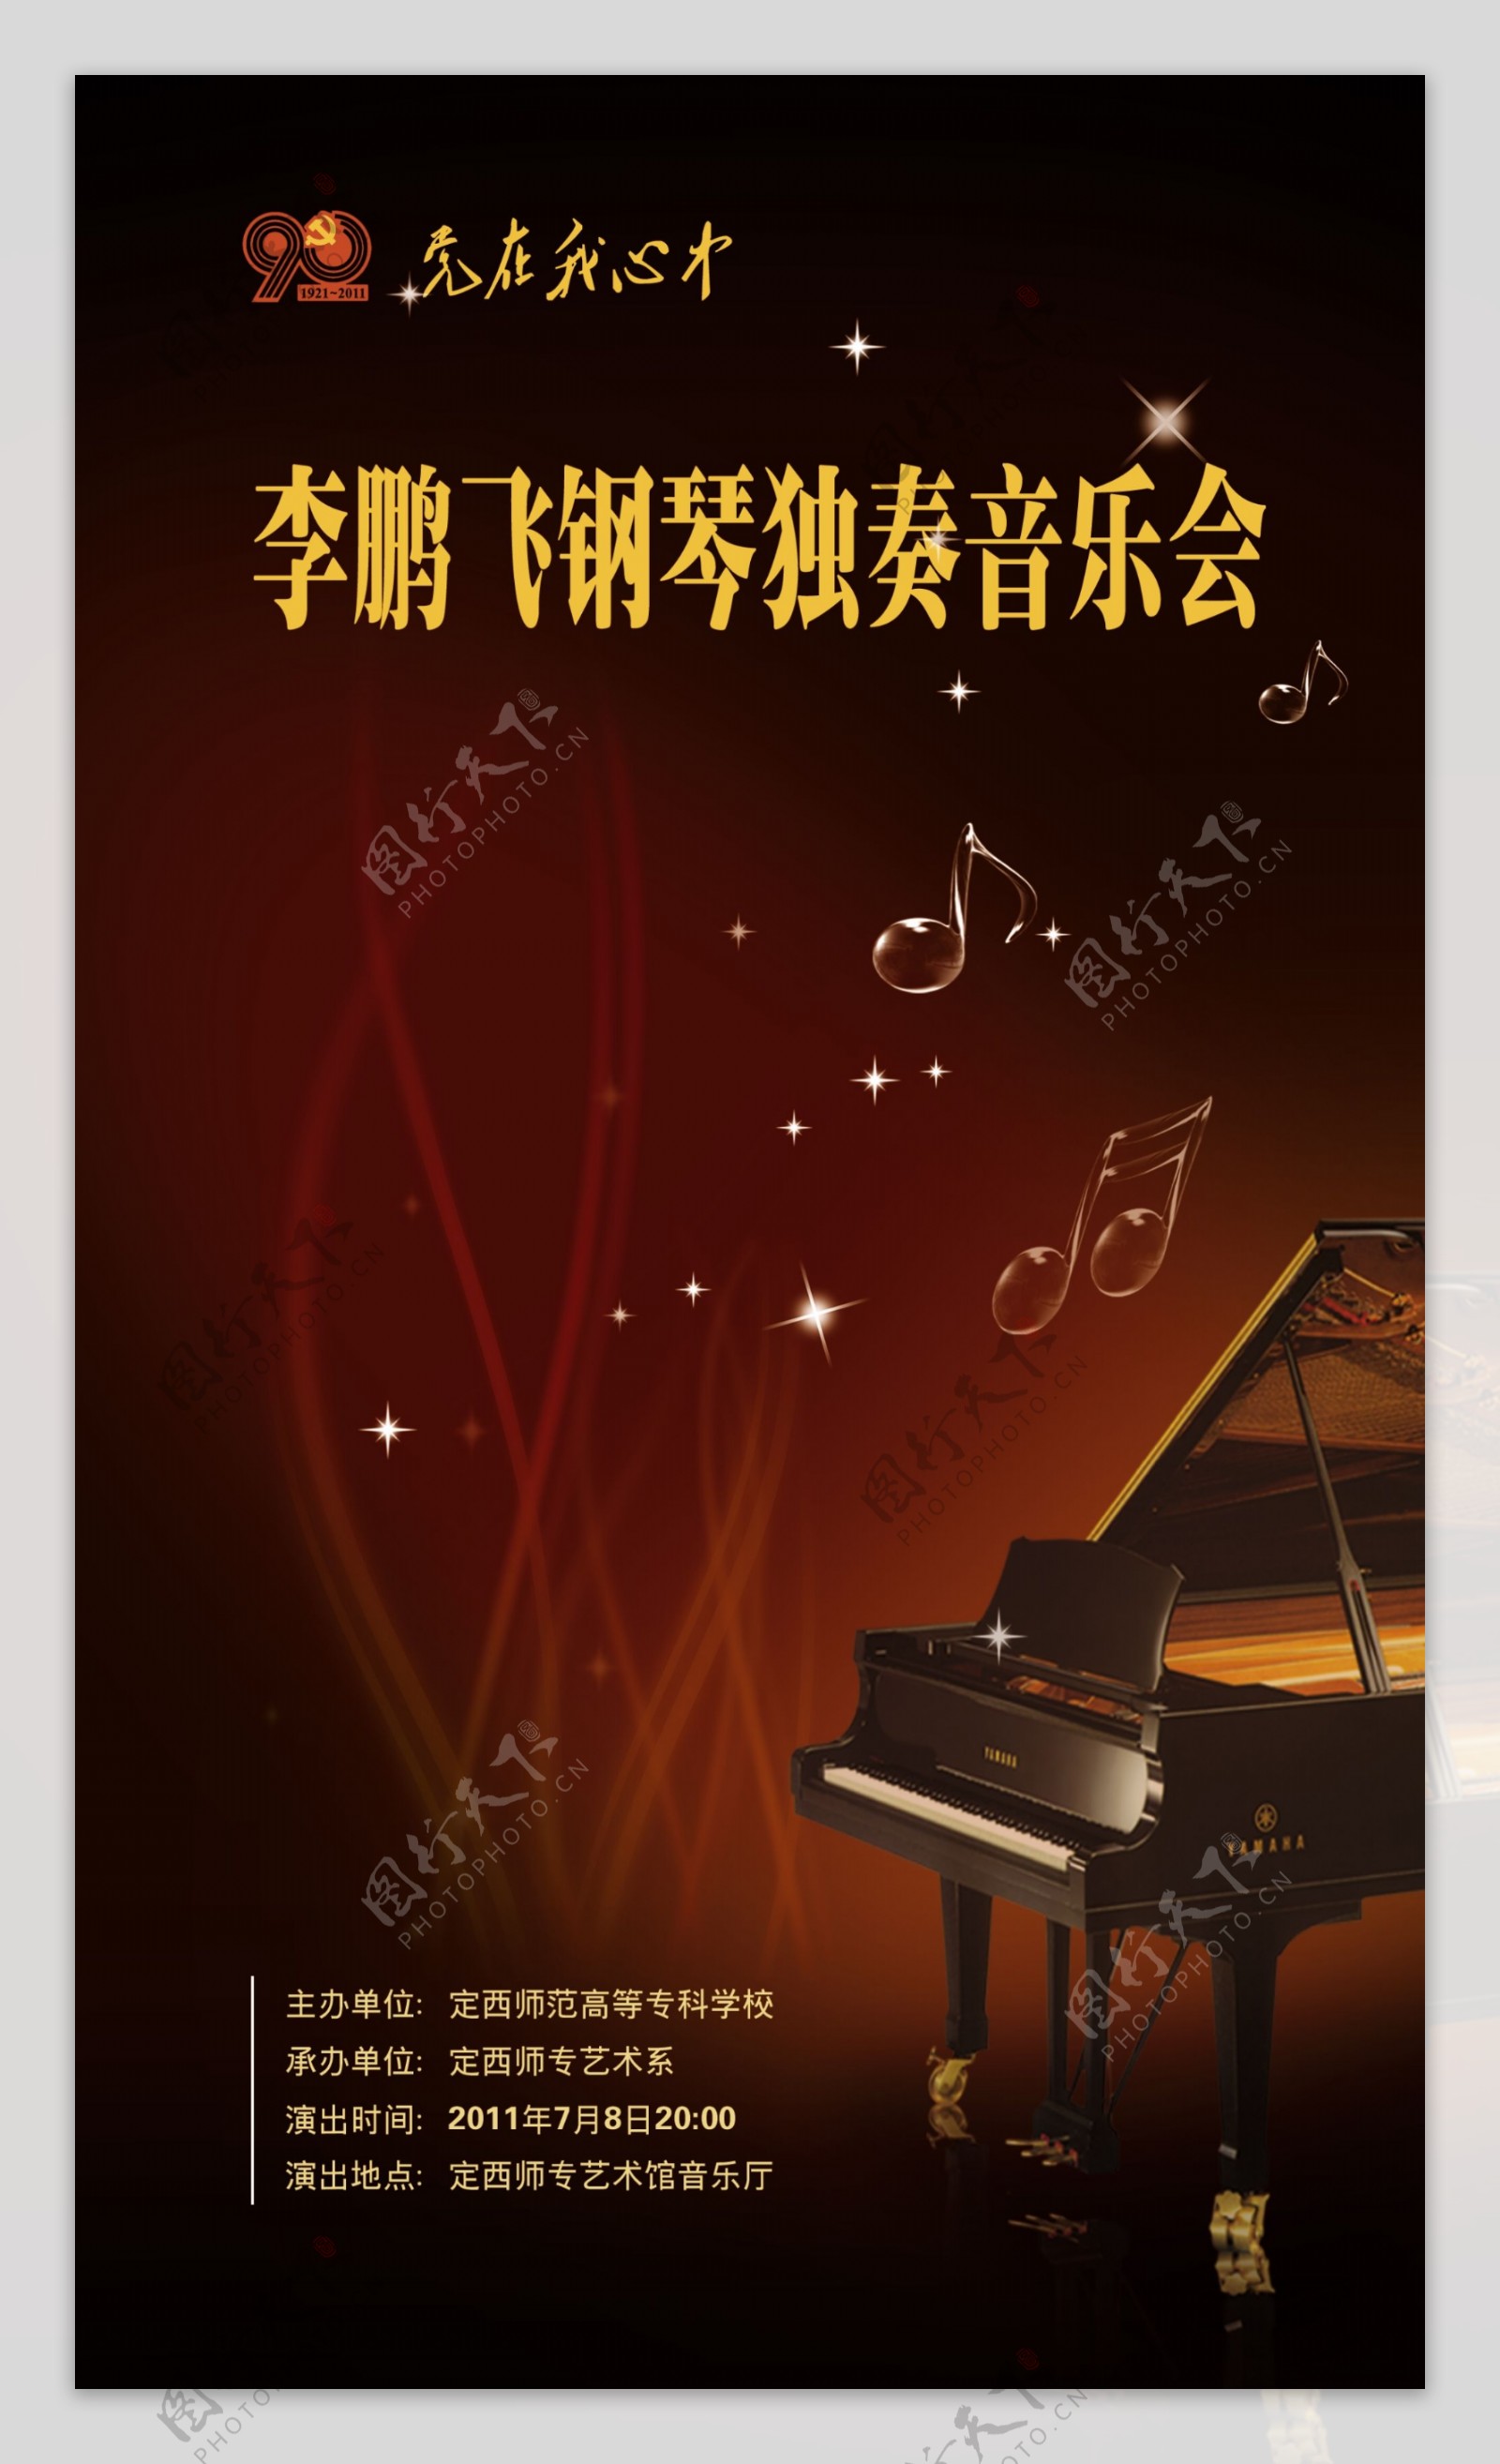 钢琴独奏音乐会海报